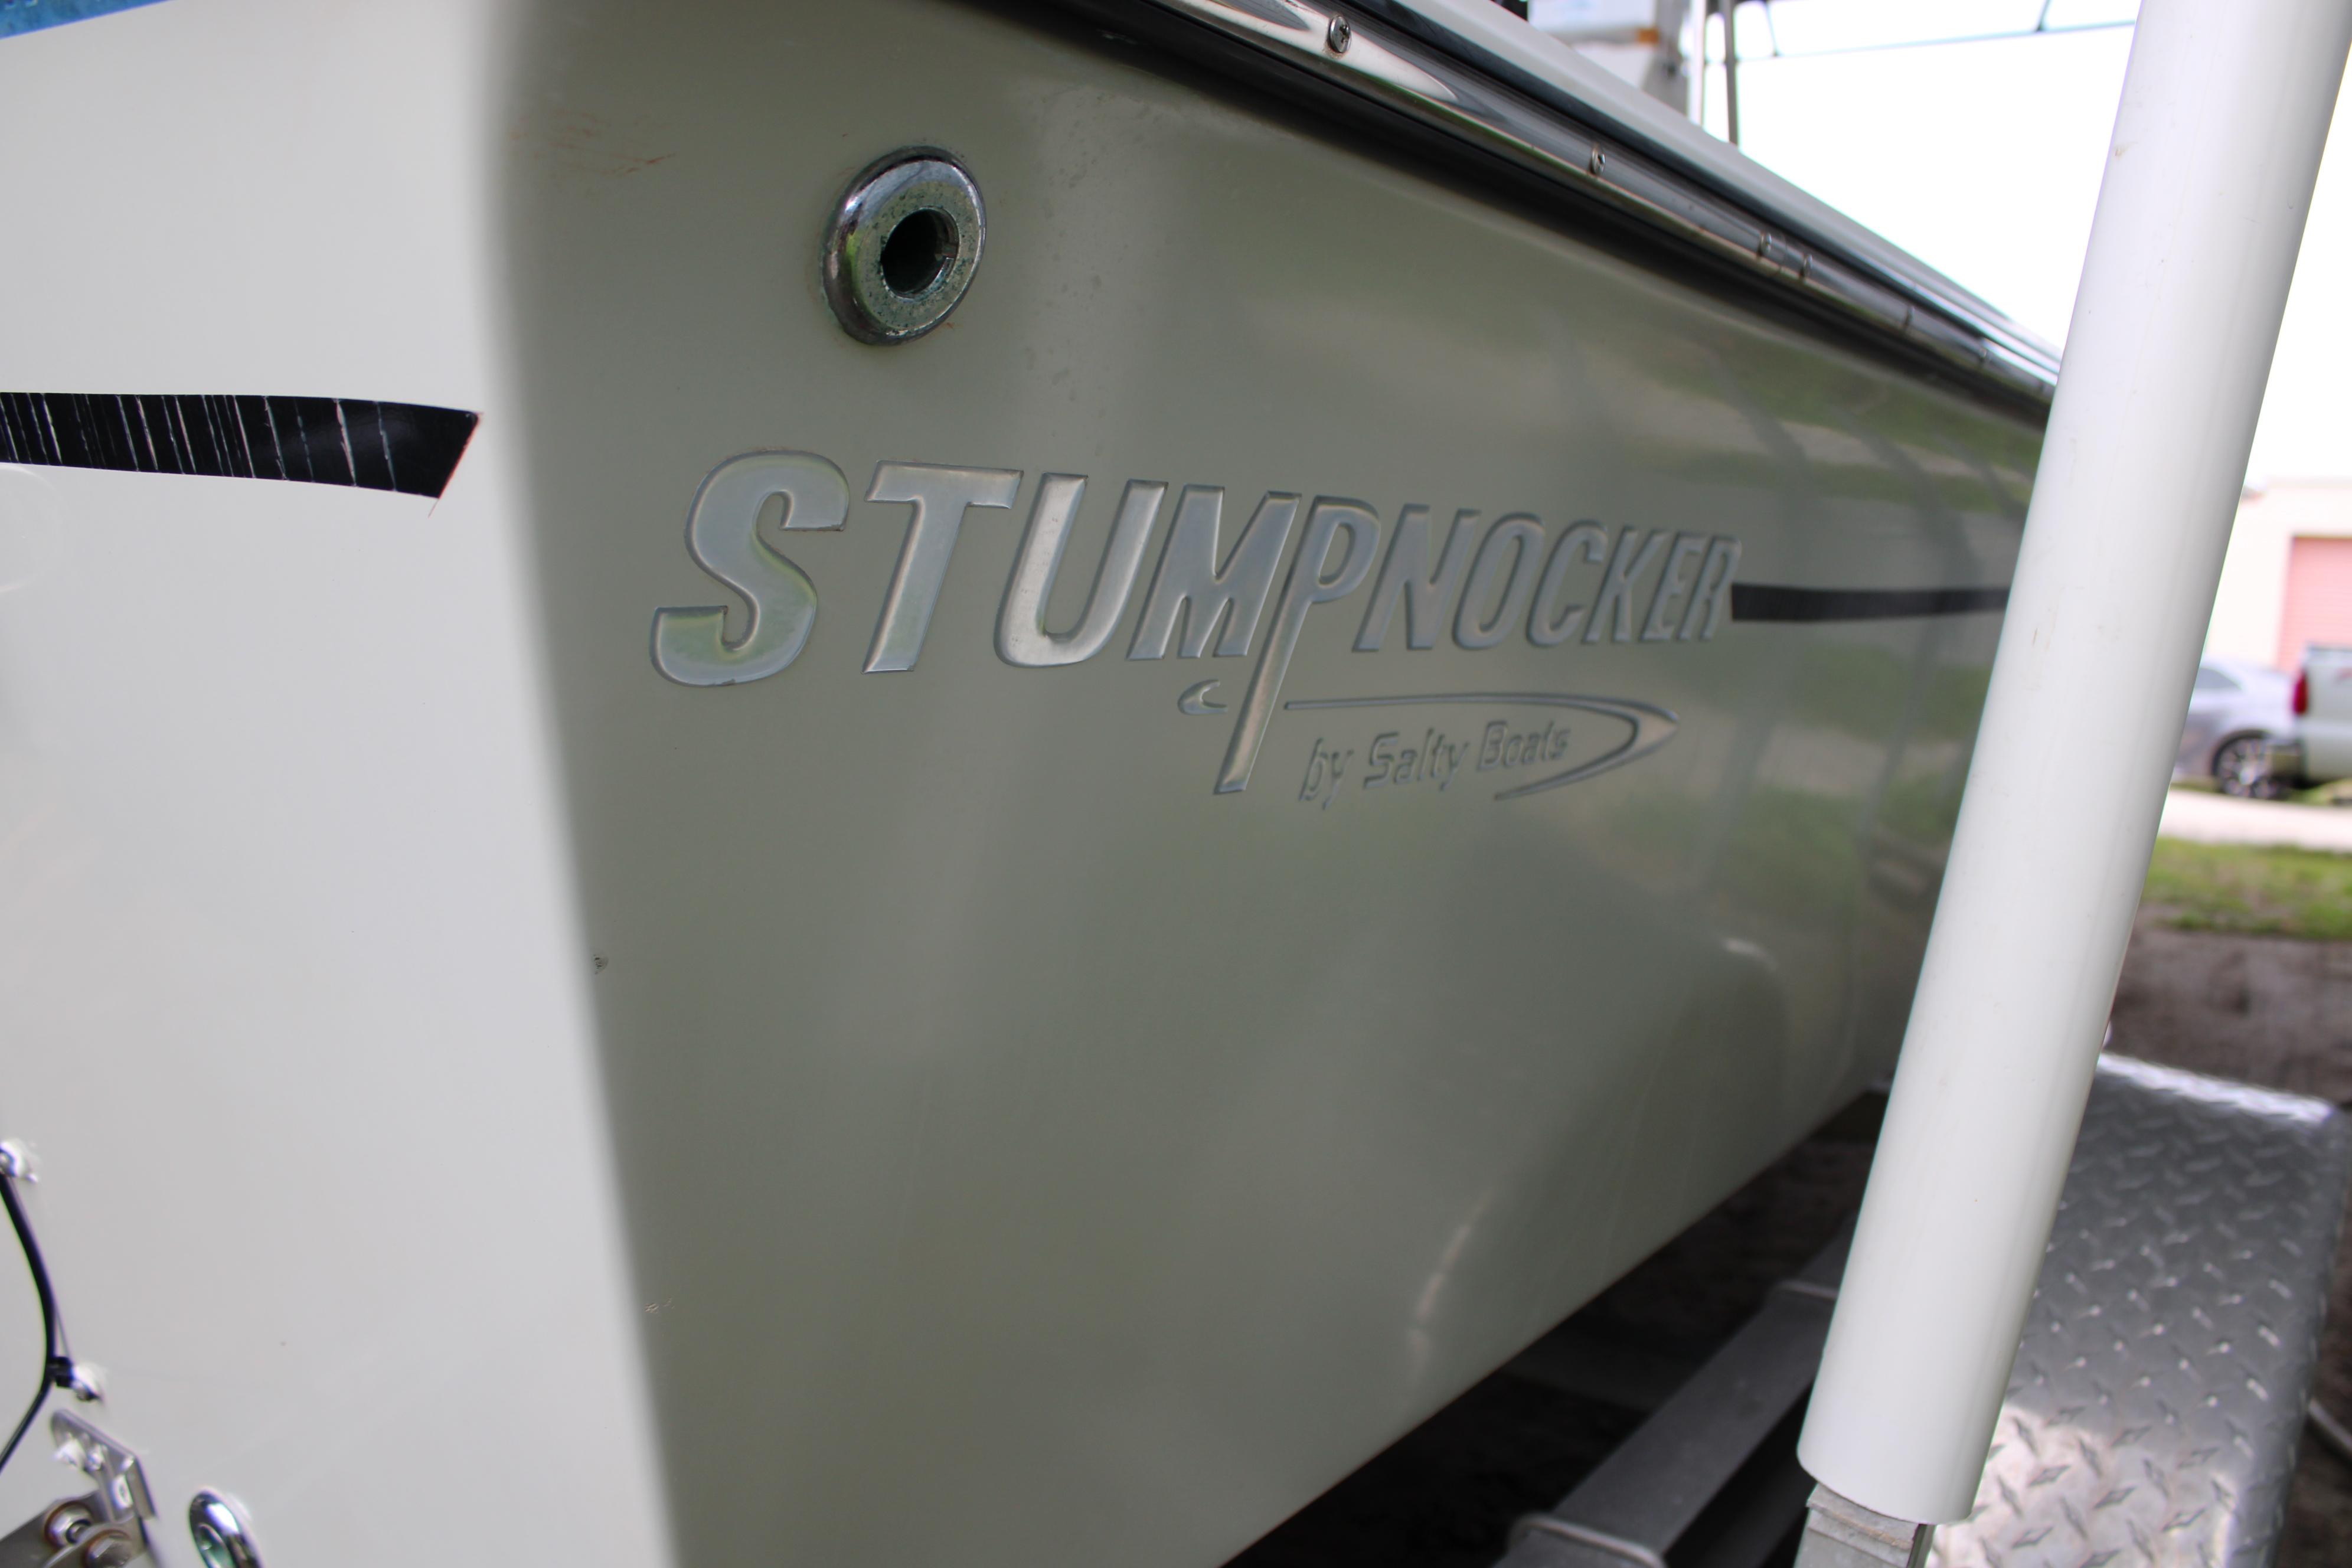 2019 Stumpnocker 1701 Bonita Bay